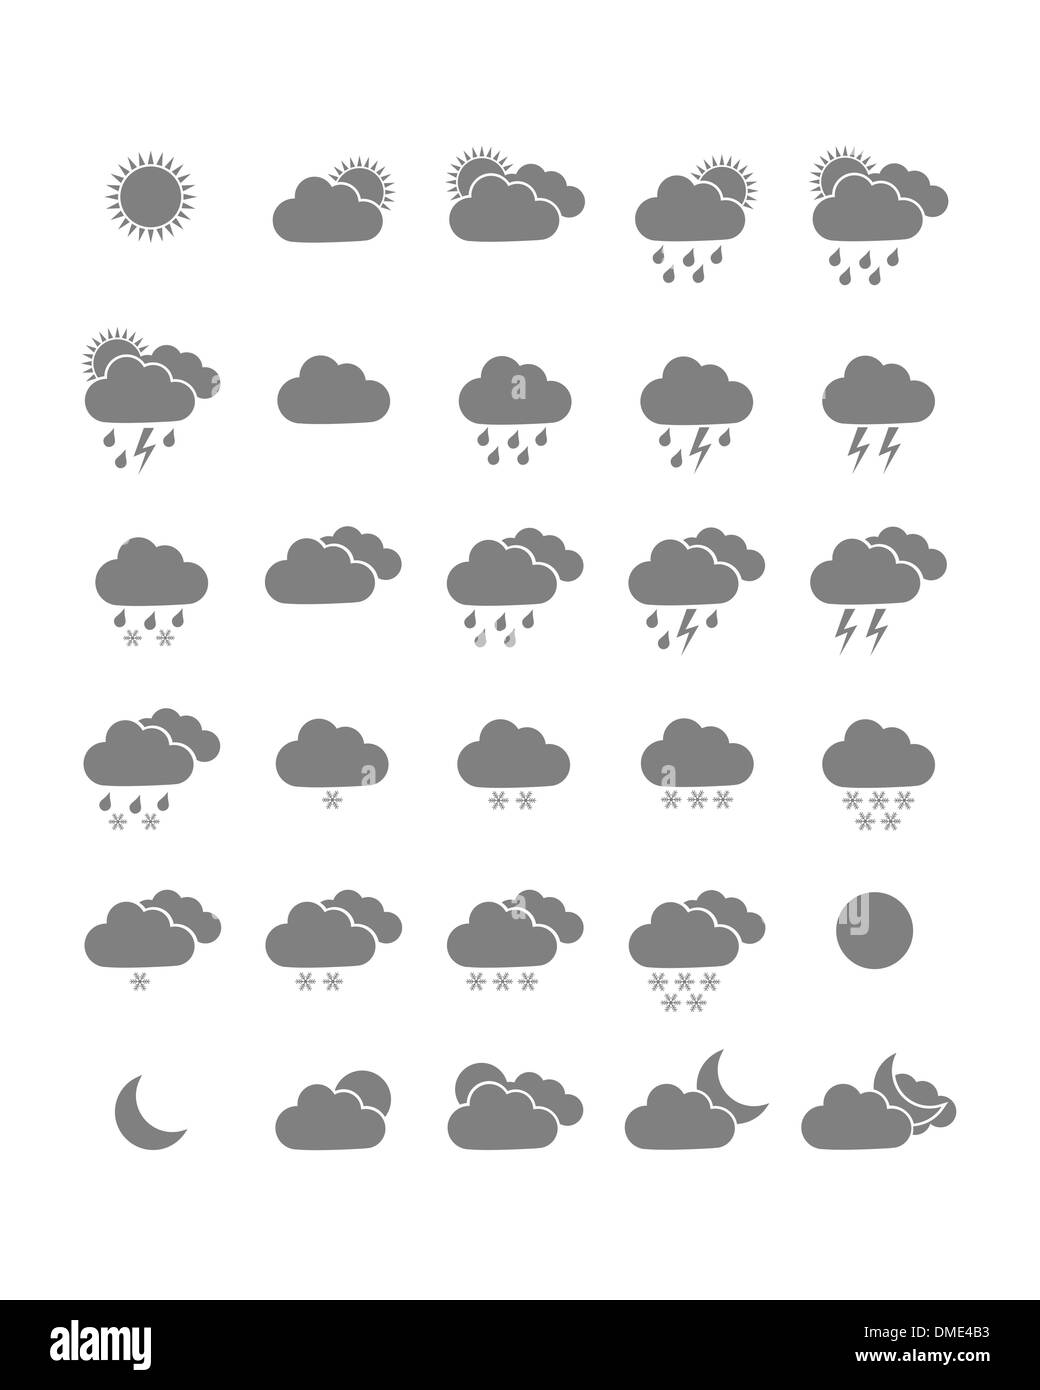 Weather forecast symbols Black and White Stock Photos & Images - Alamy